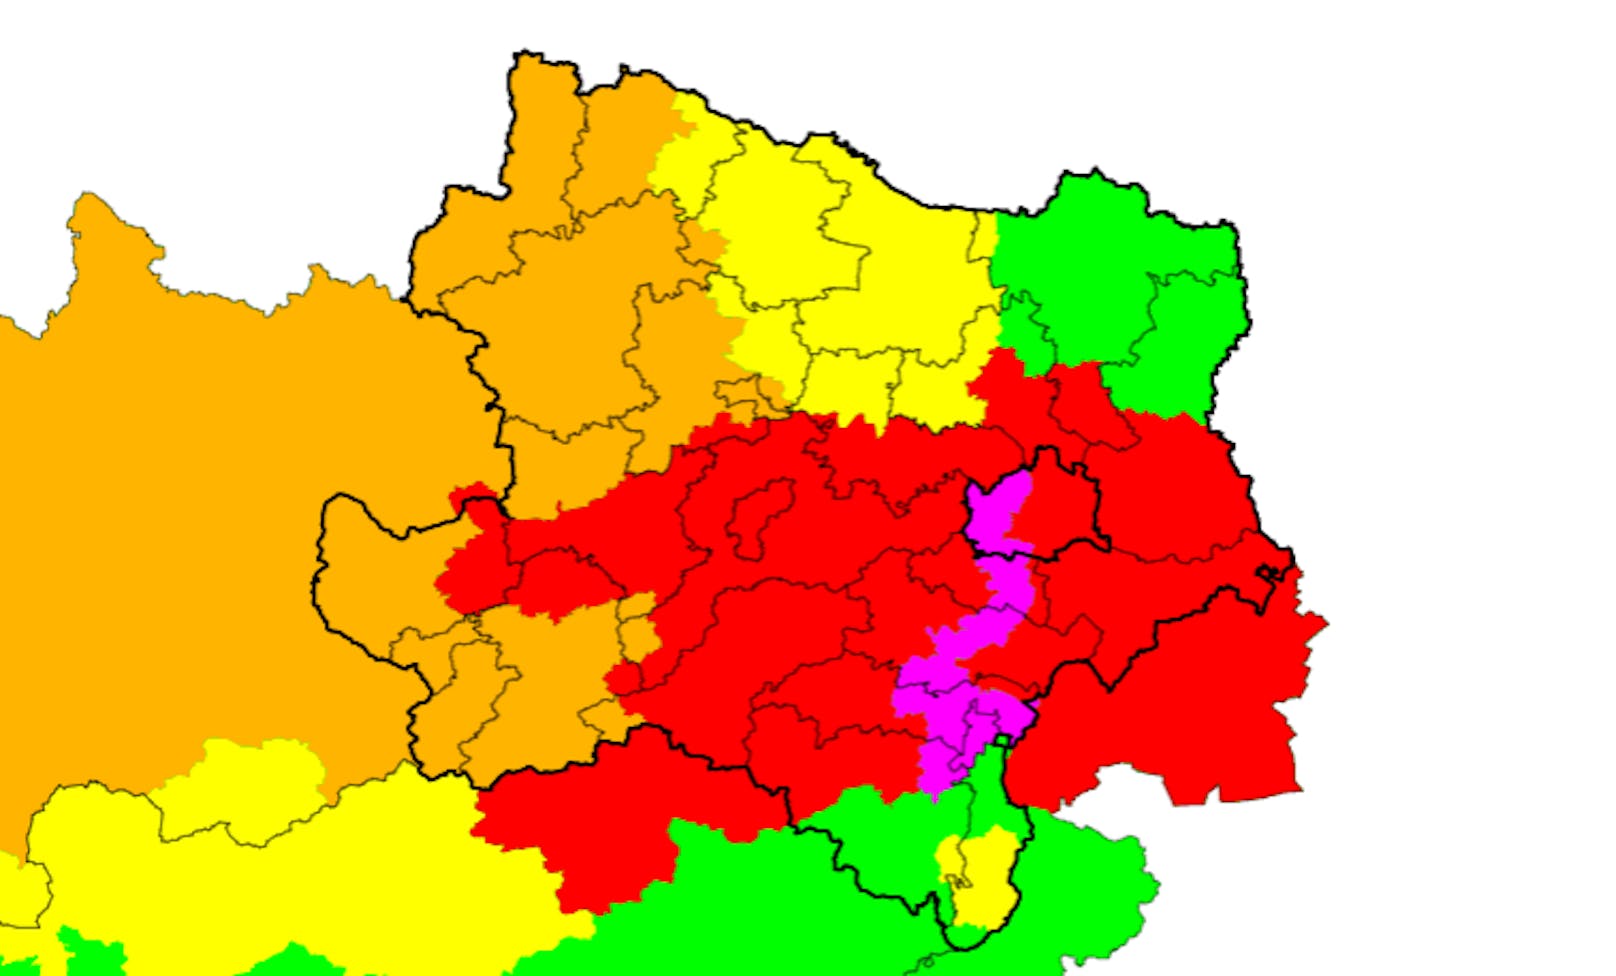 Violette Unwetterwarnung für die Bezirke Neunkirchen, Wiener Neustadt, Baden und Mödling sowie den Westen von Wien.